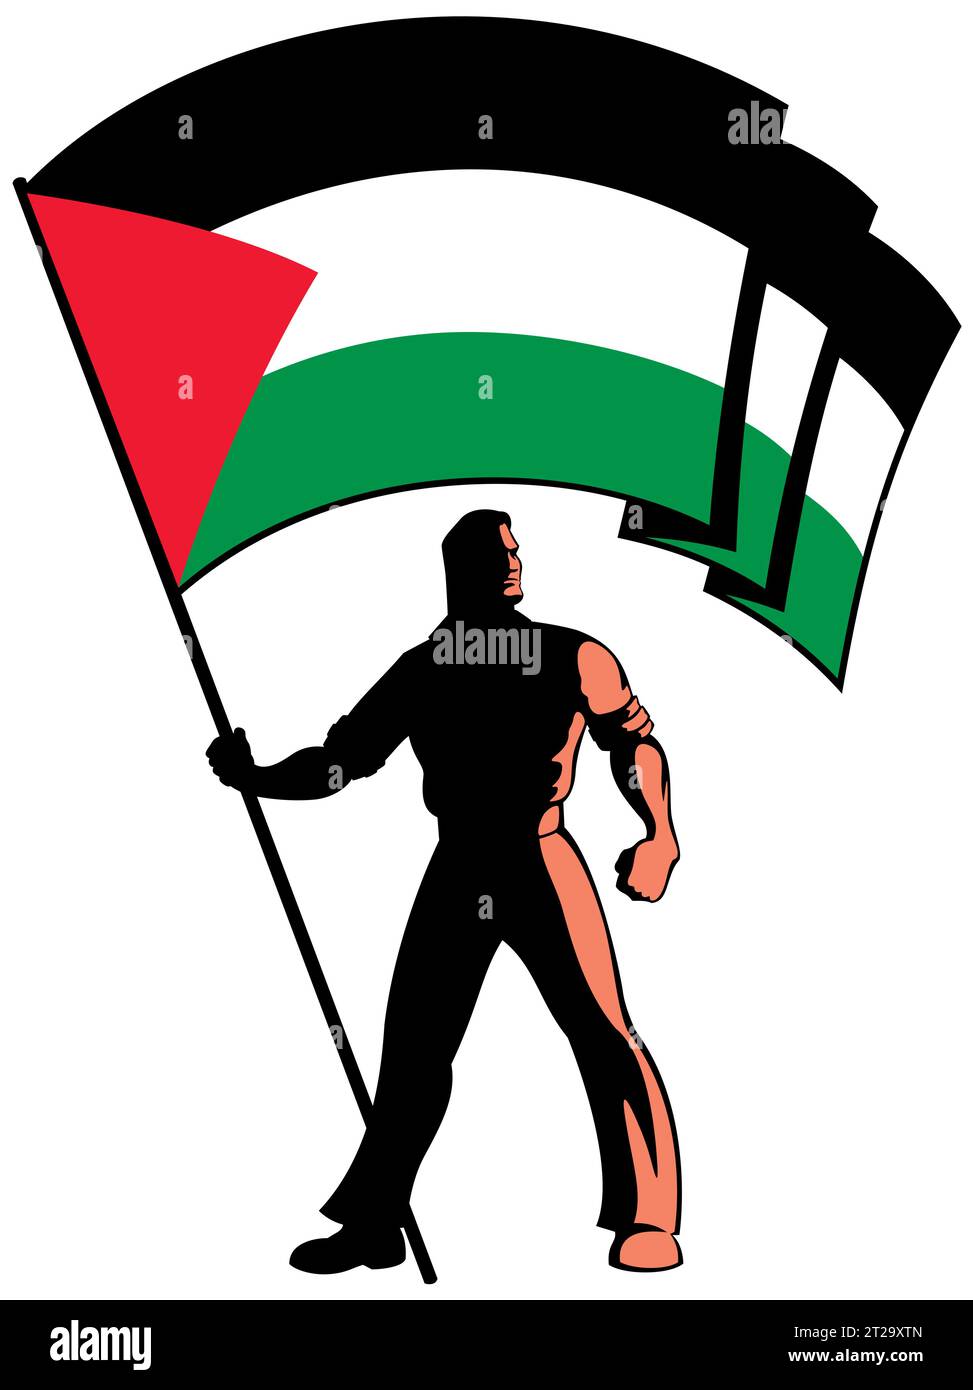 Illustrazione stilizzata di un personaggio maschile che regge con orgoglio la bandiera palestinese, catturando un senso di forza e determinazione su sfondo bianco. Illustrazione Vettoriale